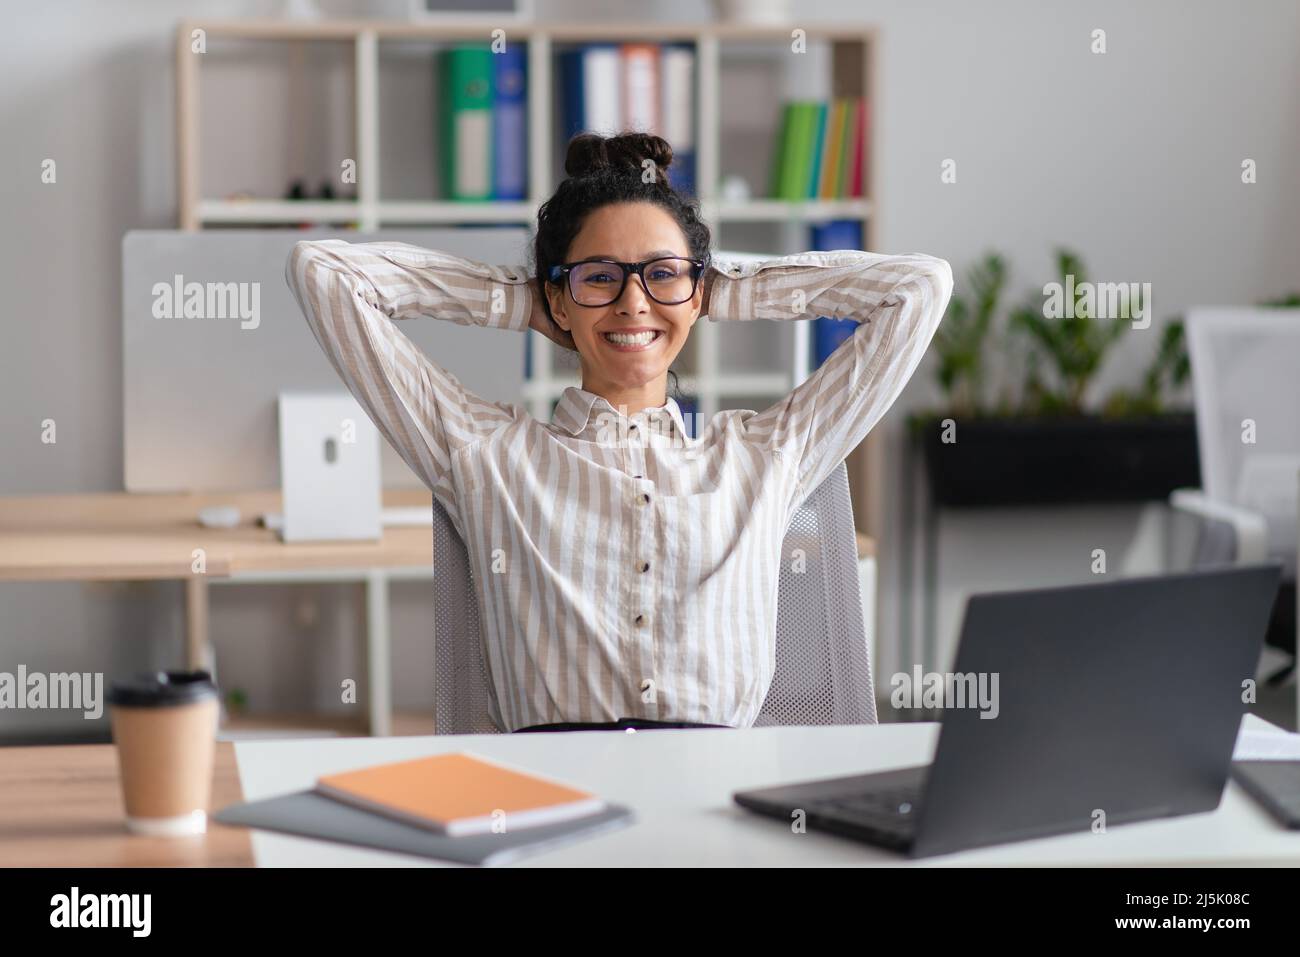 Glückliche junge Angestellte, die sich im Büro vor dem Laptop auf ihrem Stuhl ausruht und sich nach einem erfolgreichen Geschäftsabschluss entspannt Stockfoto